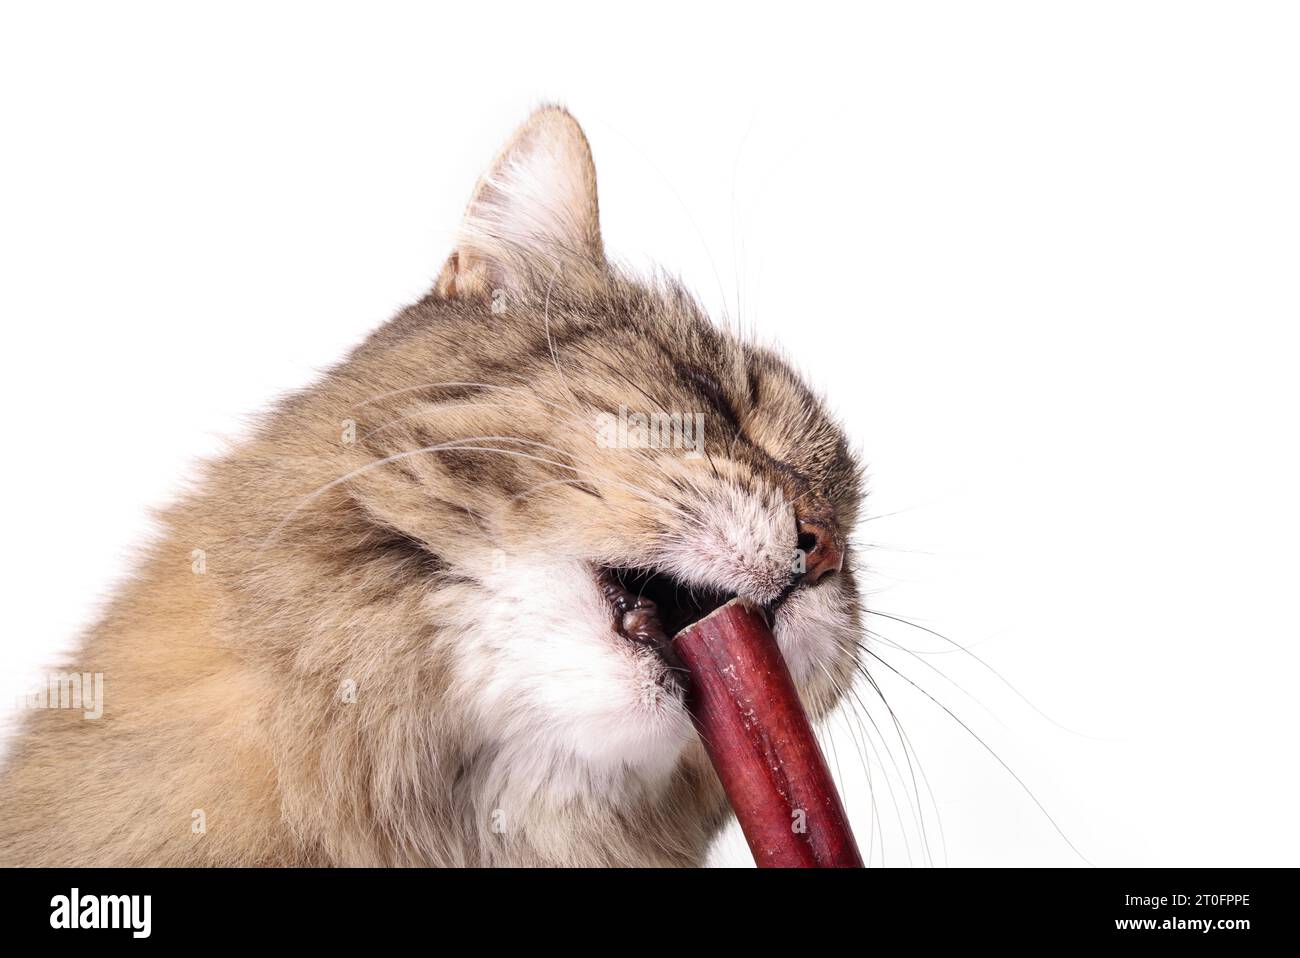 Flauschige Tabby-Katze, die Kaustock isst. Zahnlose Seniorenkatze, die versucht, einen Bissen von Rinderstiegel zu nehmen. Konzept für Dose Katzen Hundefutter essen oder Rindfleisch verdauen b Stockfoto